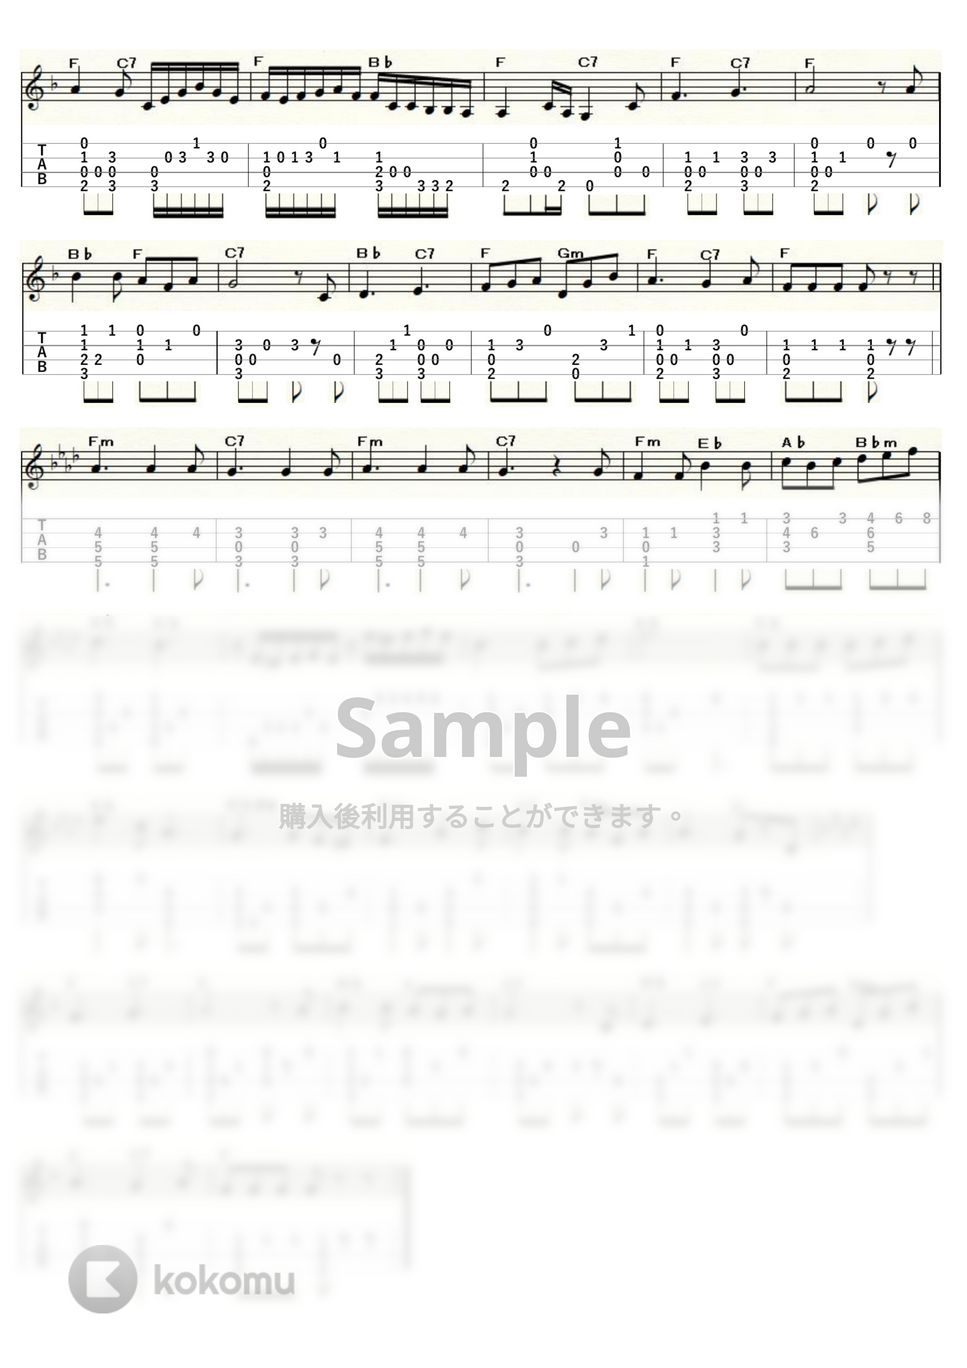 マルティーニ - 愛の喜びは (ｳｸﾚﾚｿﾛ / Low-G / 中級) by ukulelepapa